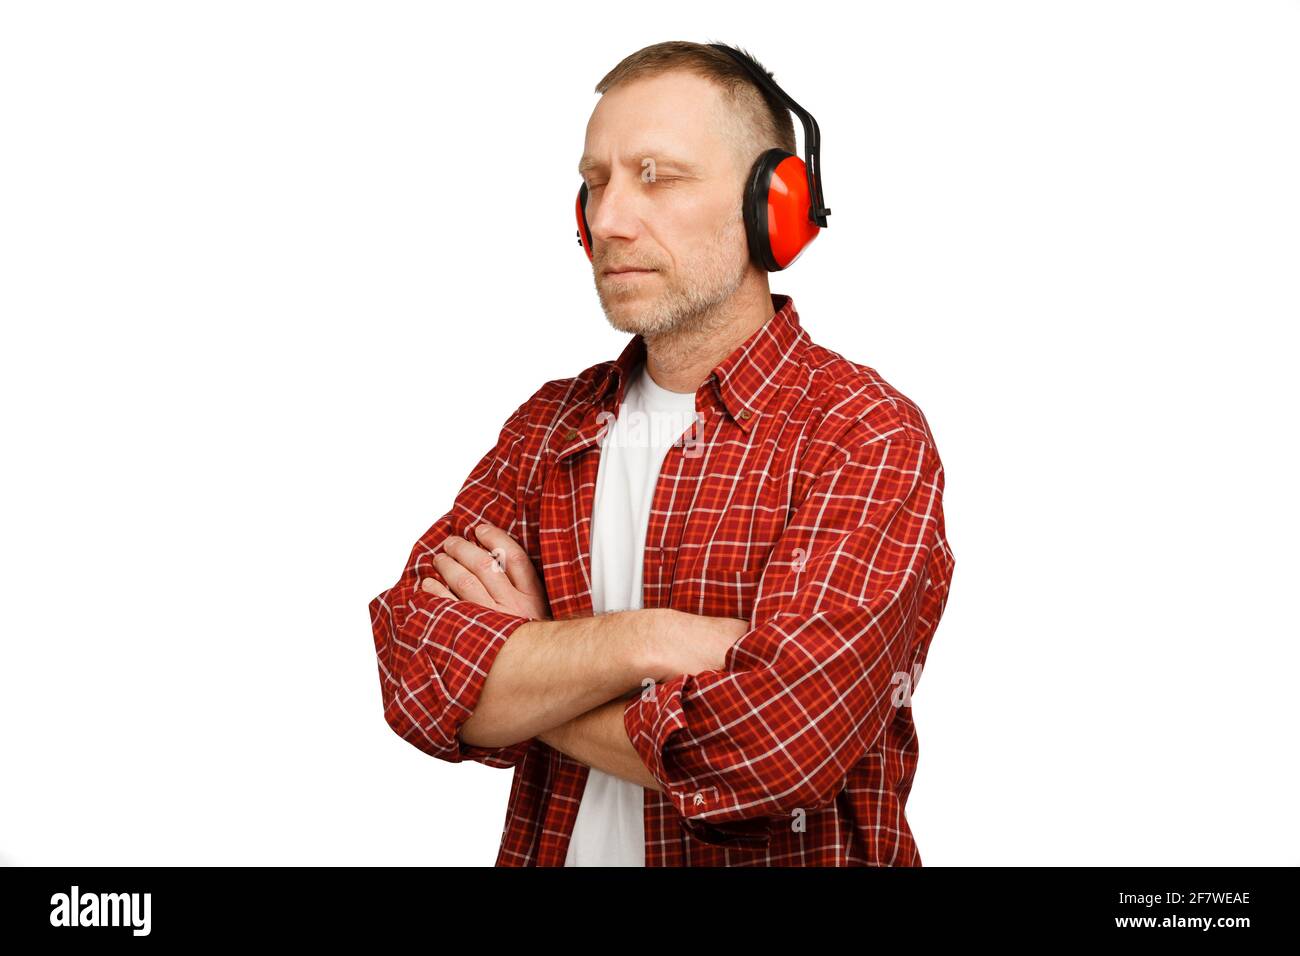 Une personne portant une protection auditive. Prise de vue en studio isolée sur fond blanc. Banque D'Images